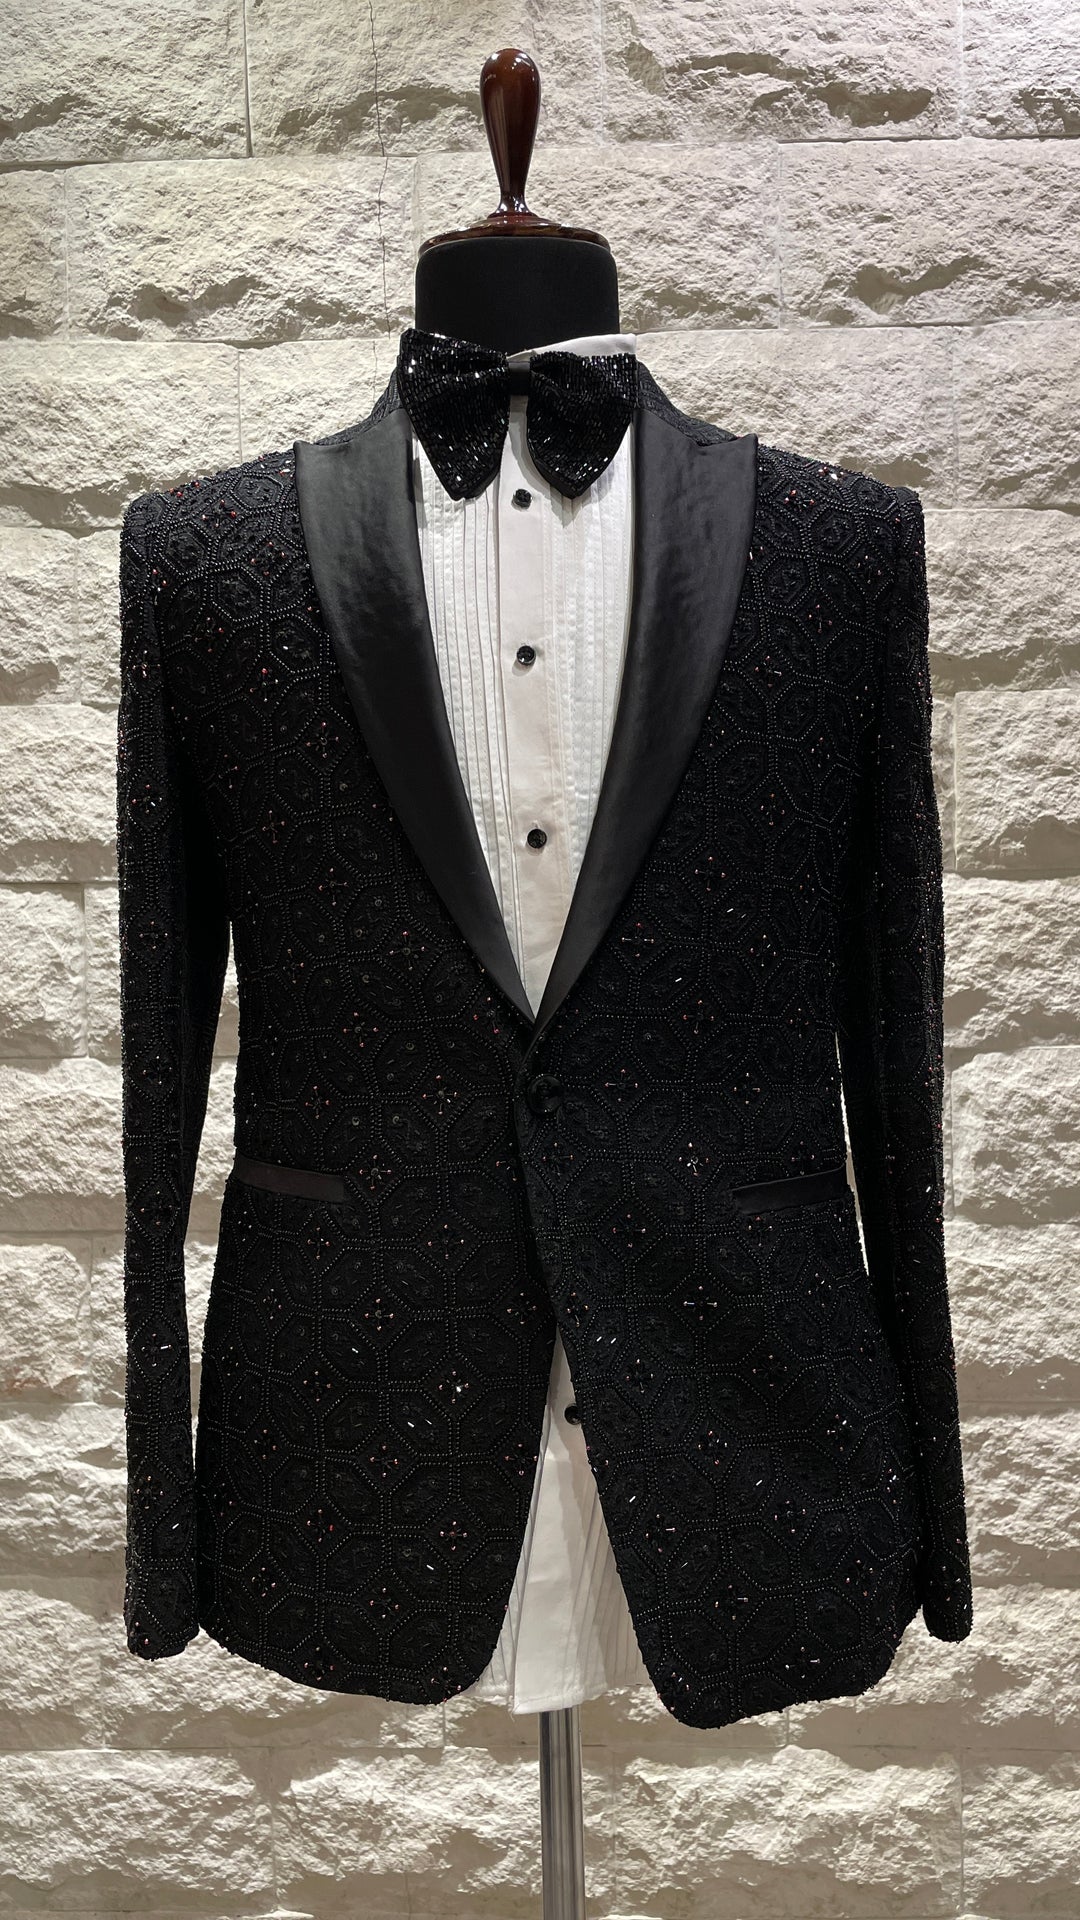 Black tuxedo with embellishments